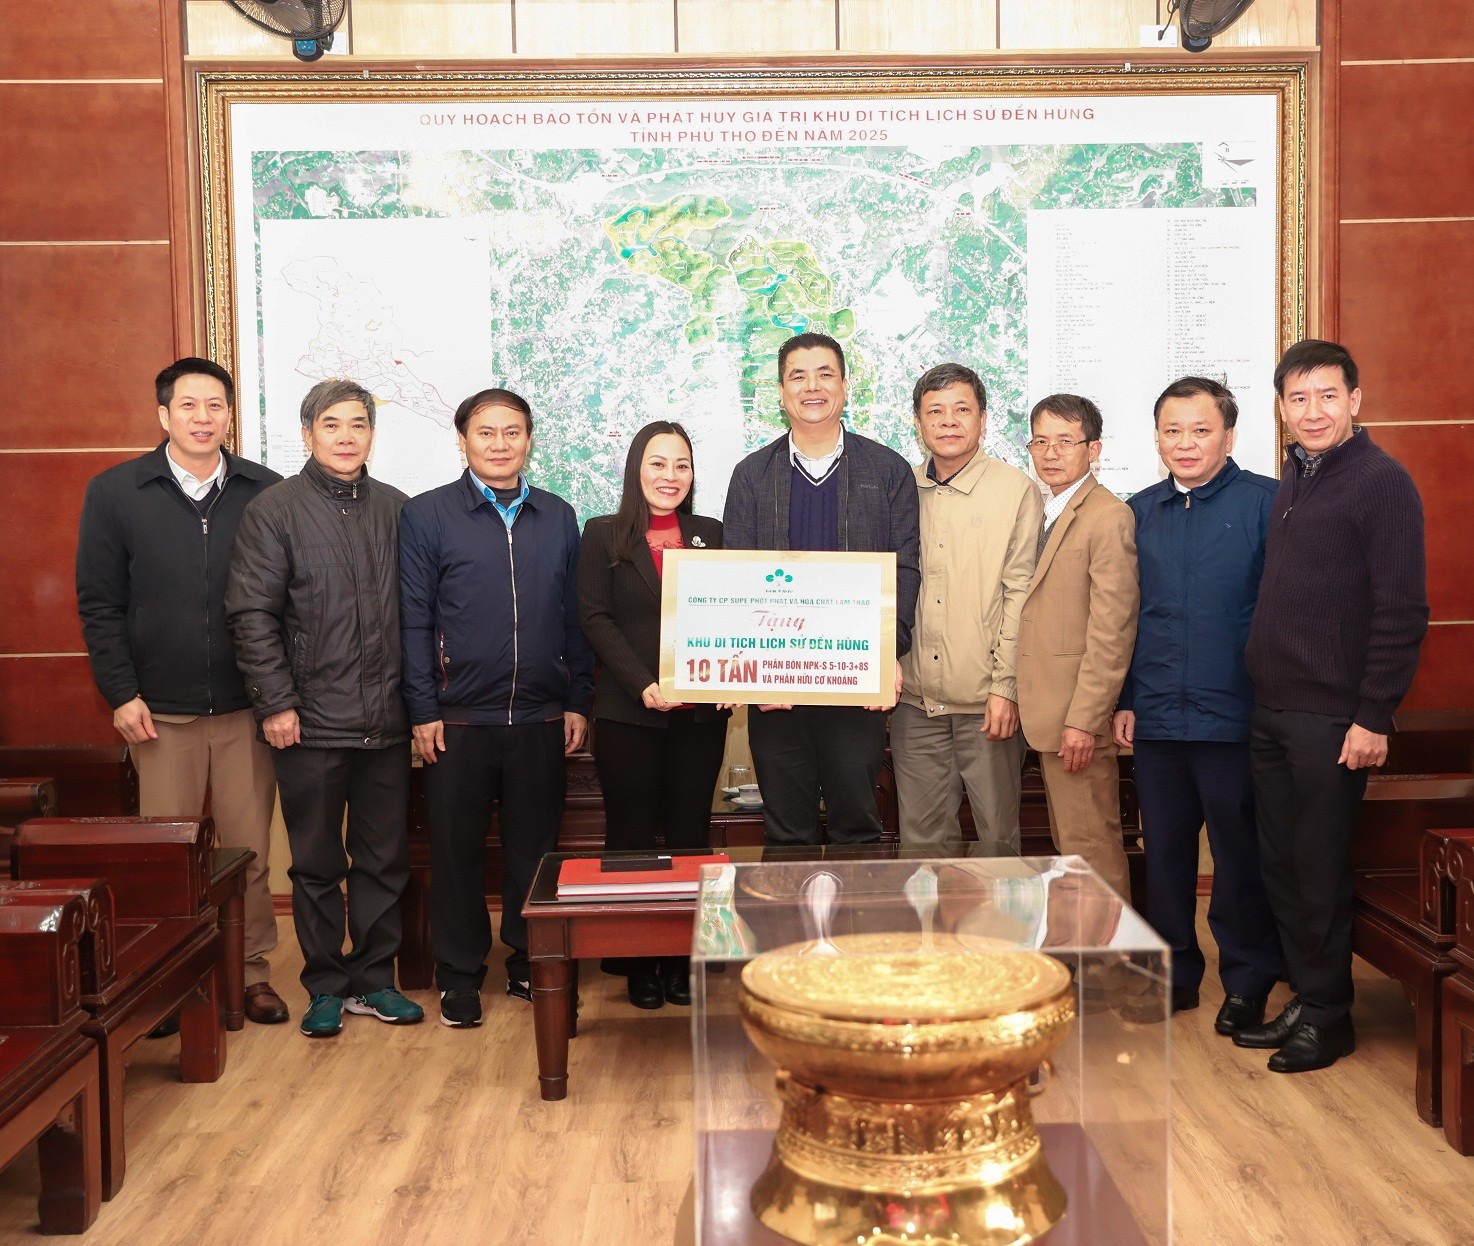 Supe Lâm Thao tổ chức chương trình "Về nguồn" và trao tặng phân bón tại Khu Di tích lịch sử Đền Hùng, Di tích Đền Mẫu Âu Cơ  (Hạ Hòa, Phú Thọ) năm 2022.